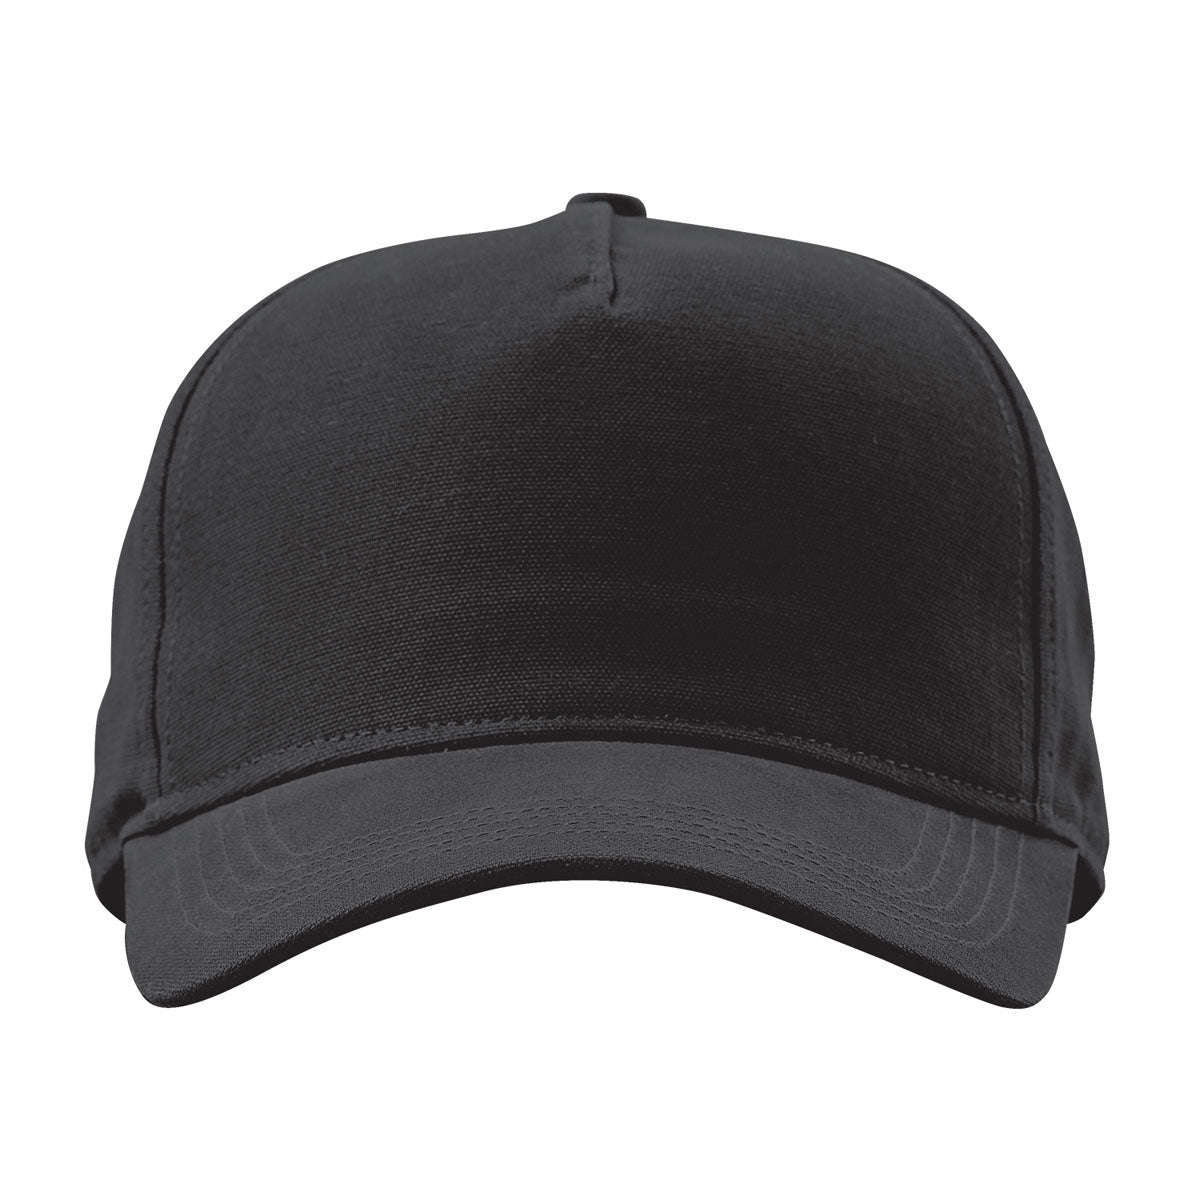 Peak - Tech A-Frame Hat - Black